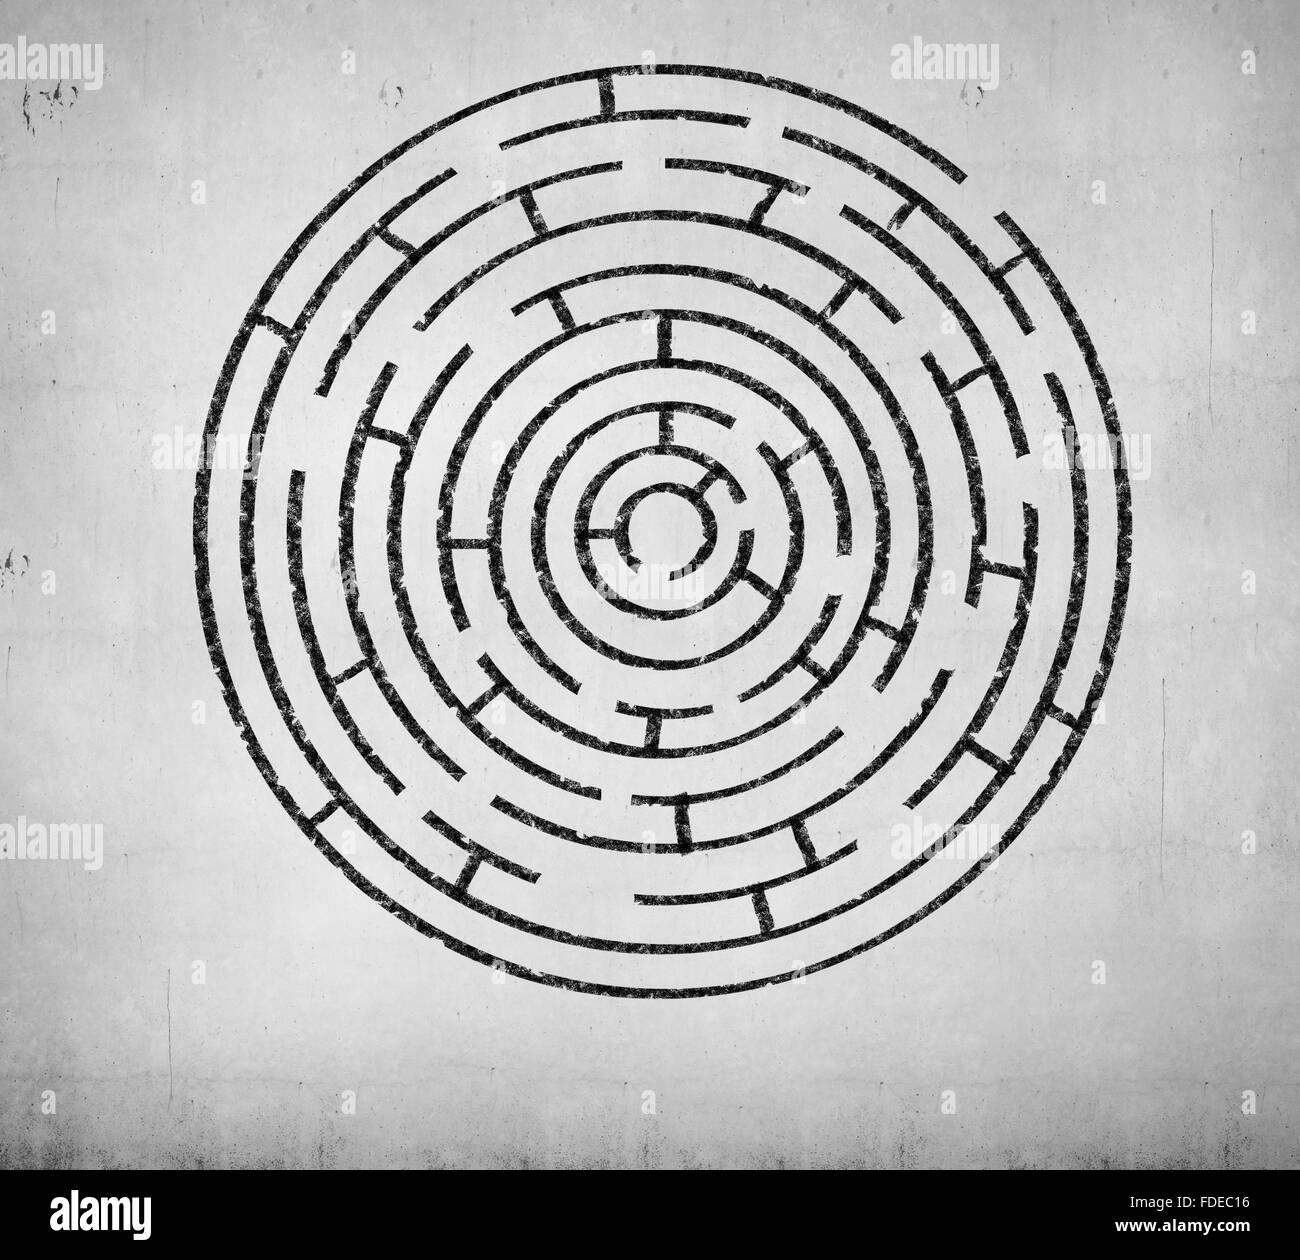 Labyrinthe ronde contre l'arrière-plan blanc. Idée de solution Banque D'Images